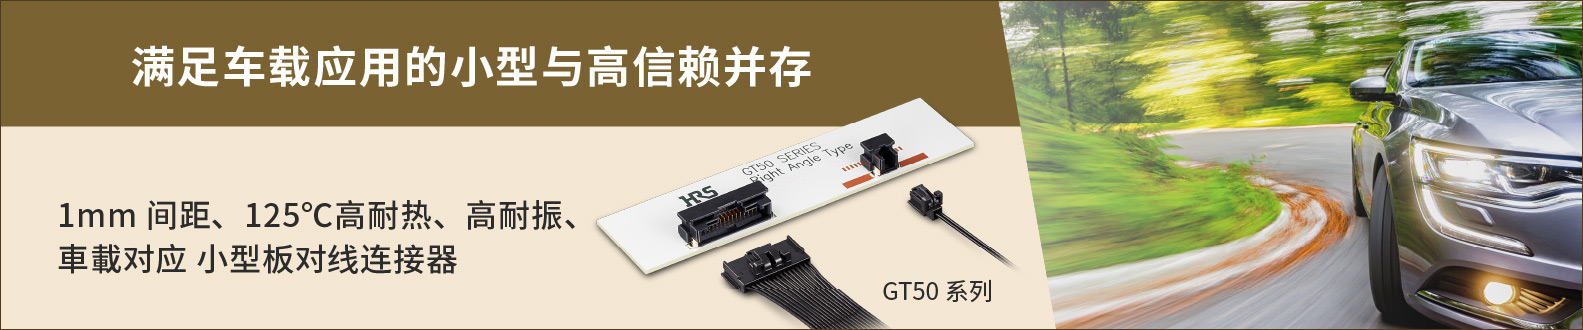 CN_GT50_Banner.jpg